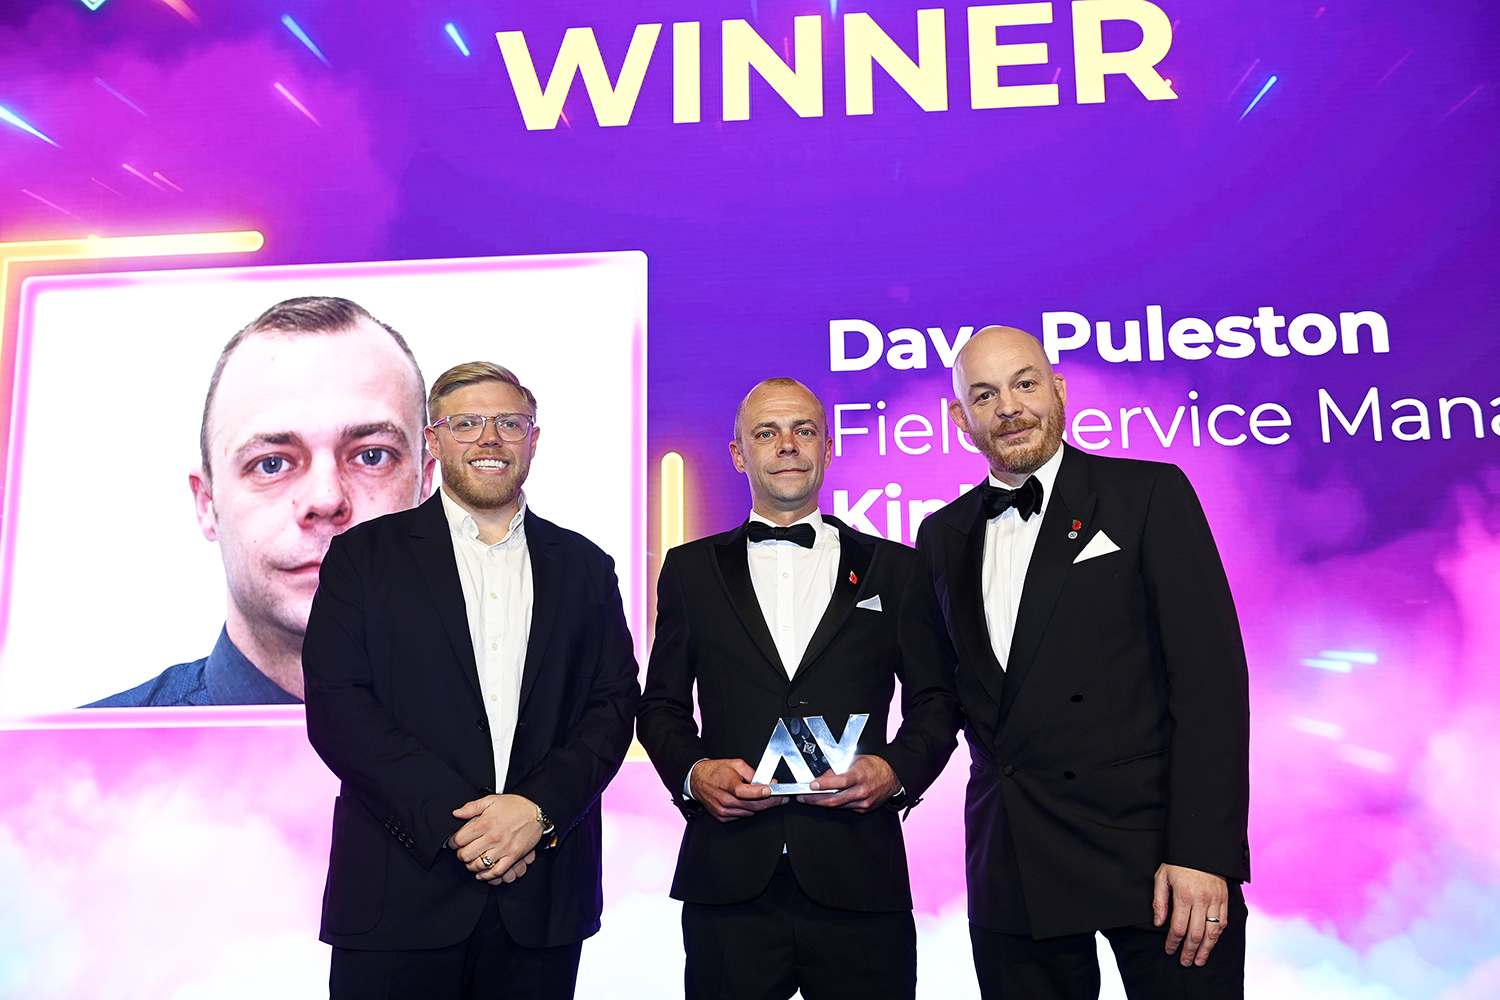 Dave Puleston posing with his award at the AV Awards